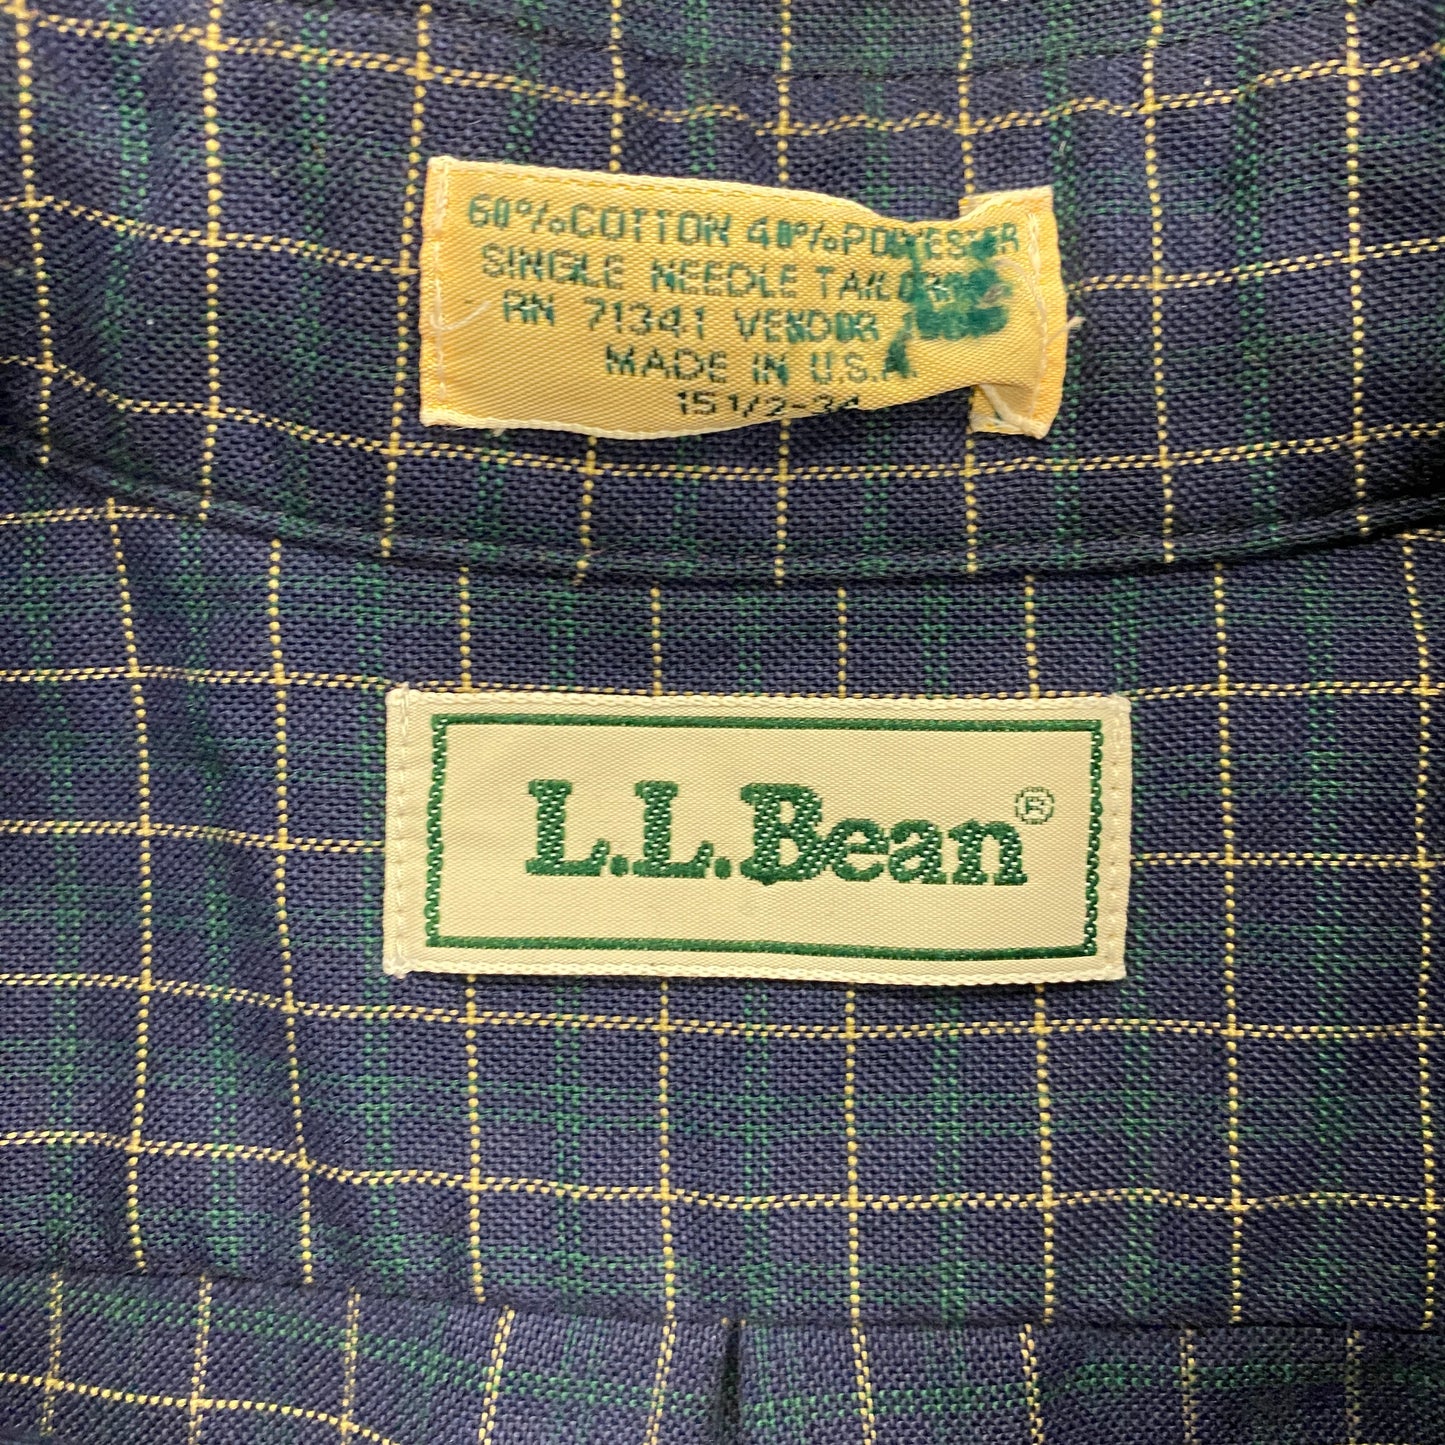 1980s LL Bean Navy Windowpane Button Up Shirt - Size Medium